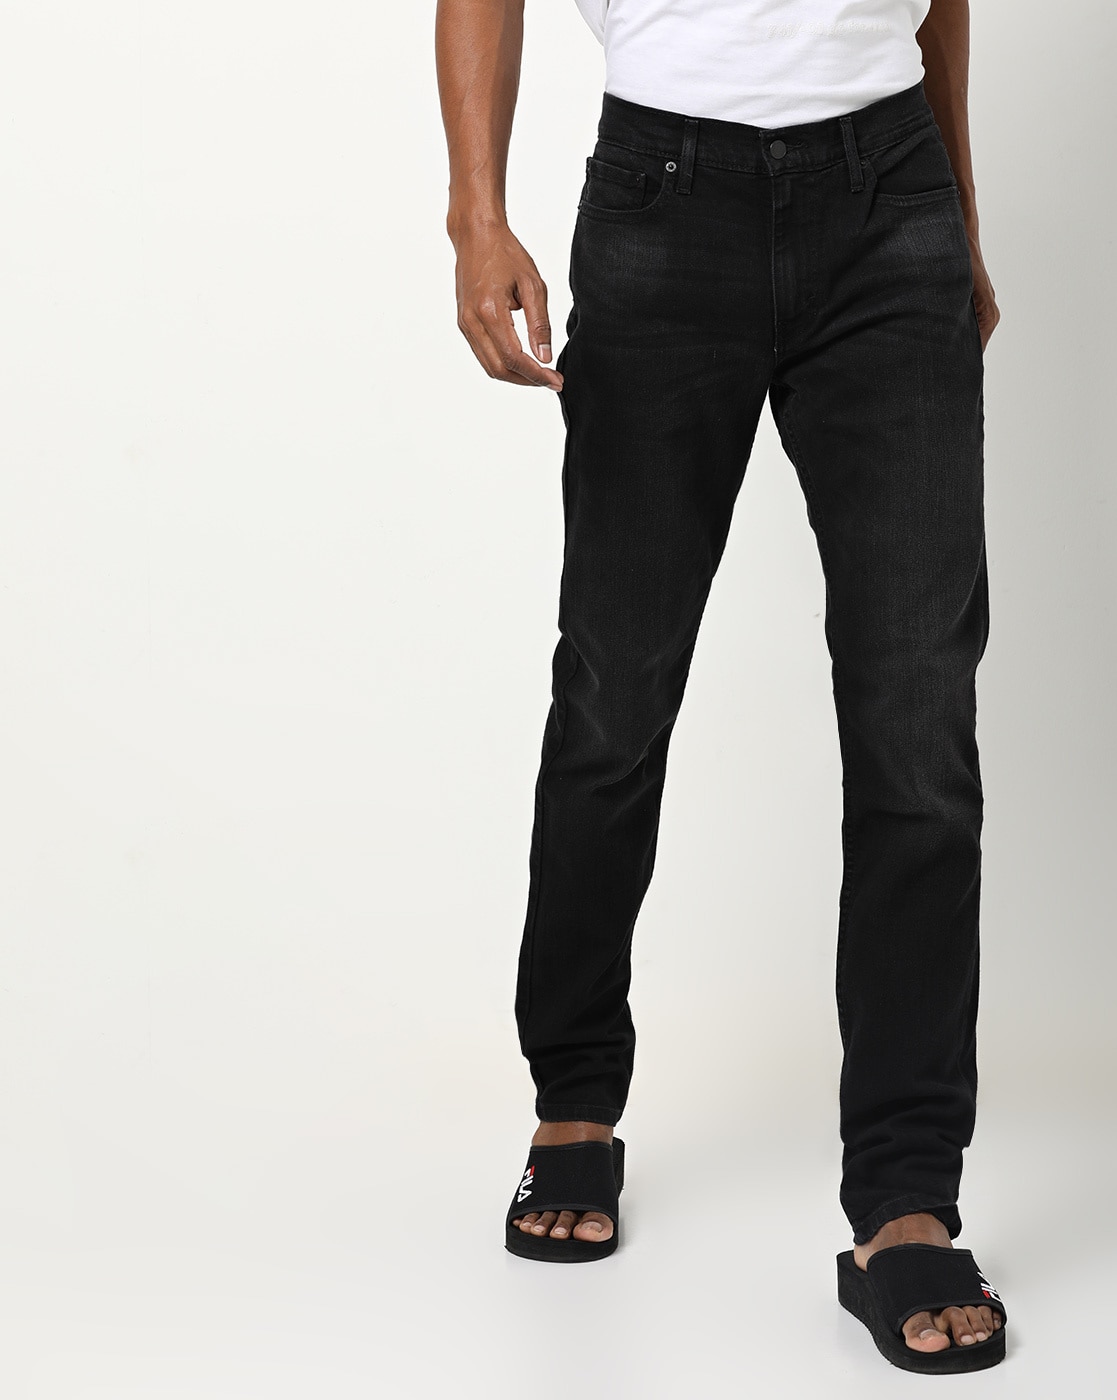 levis jeans online shop